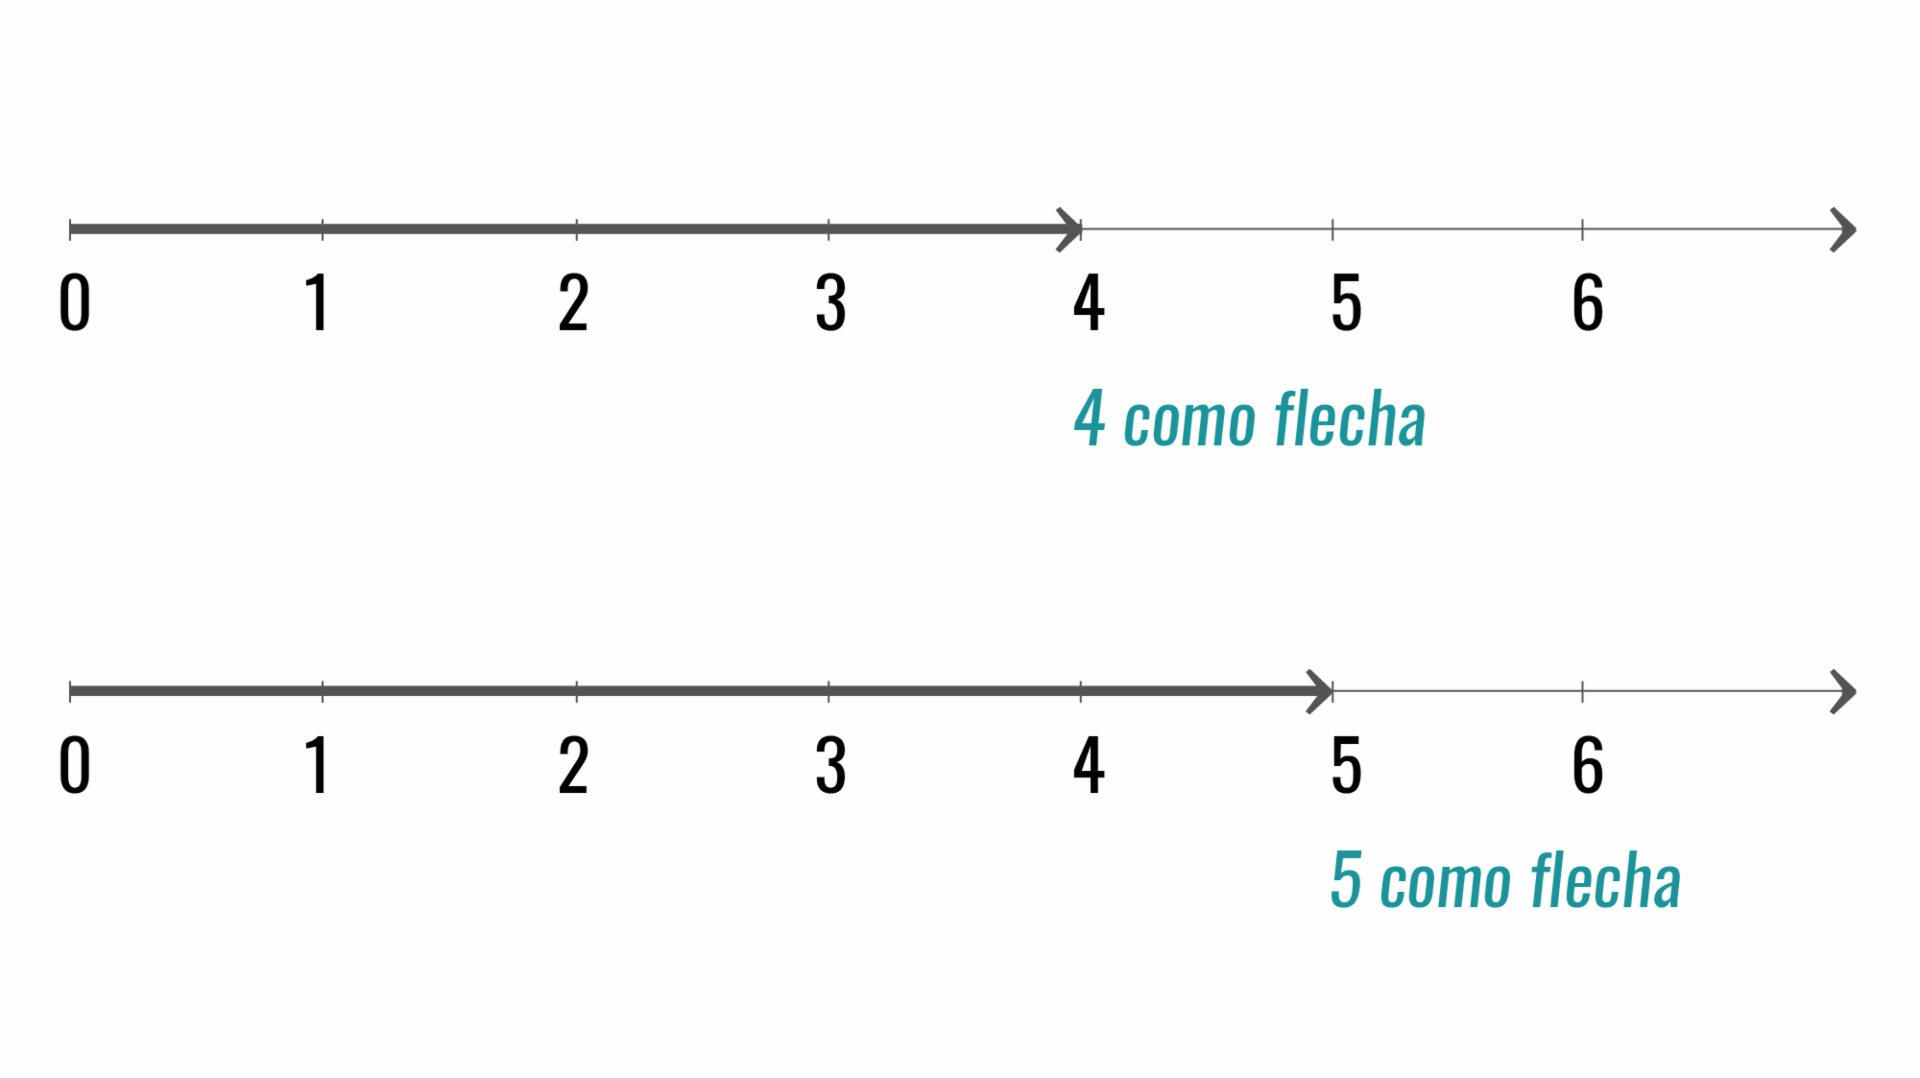 Representação nos números 4 e 5 nas flechas.